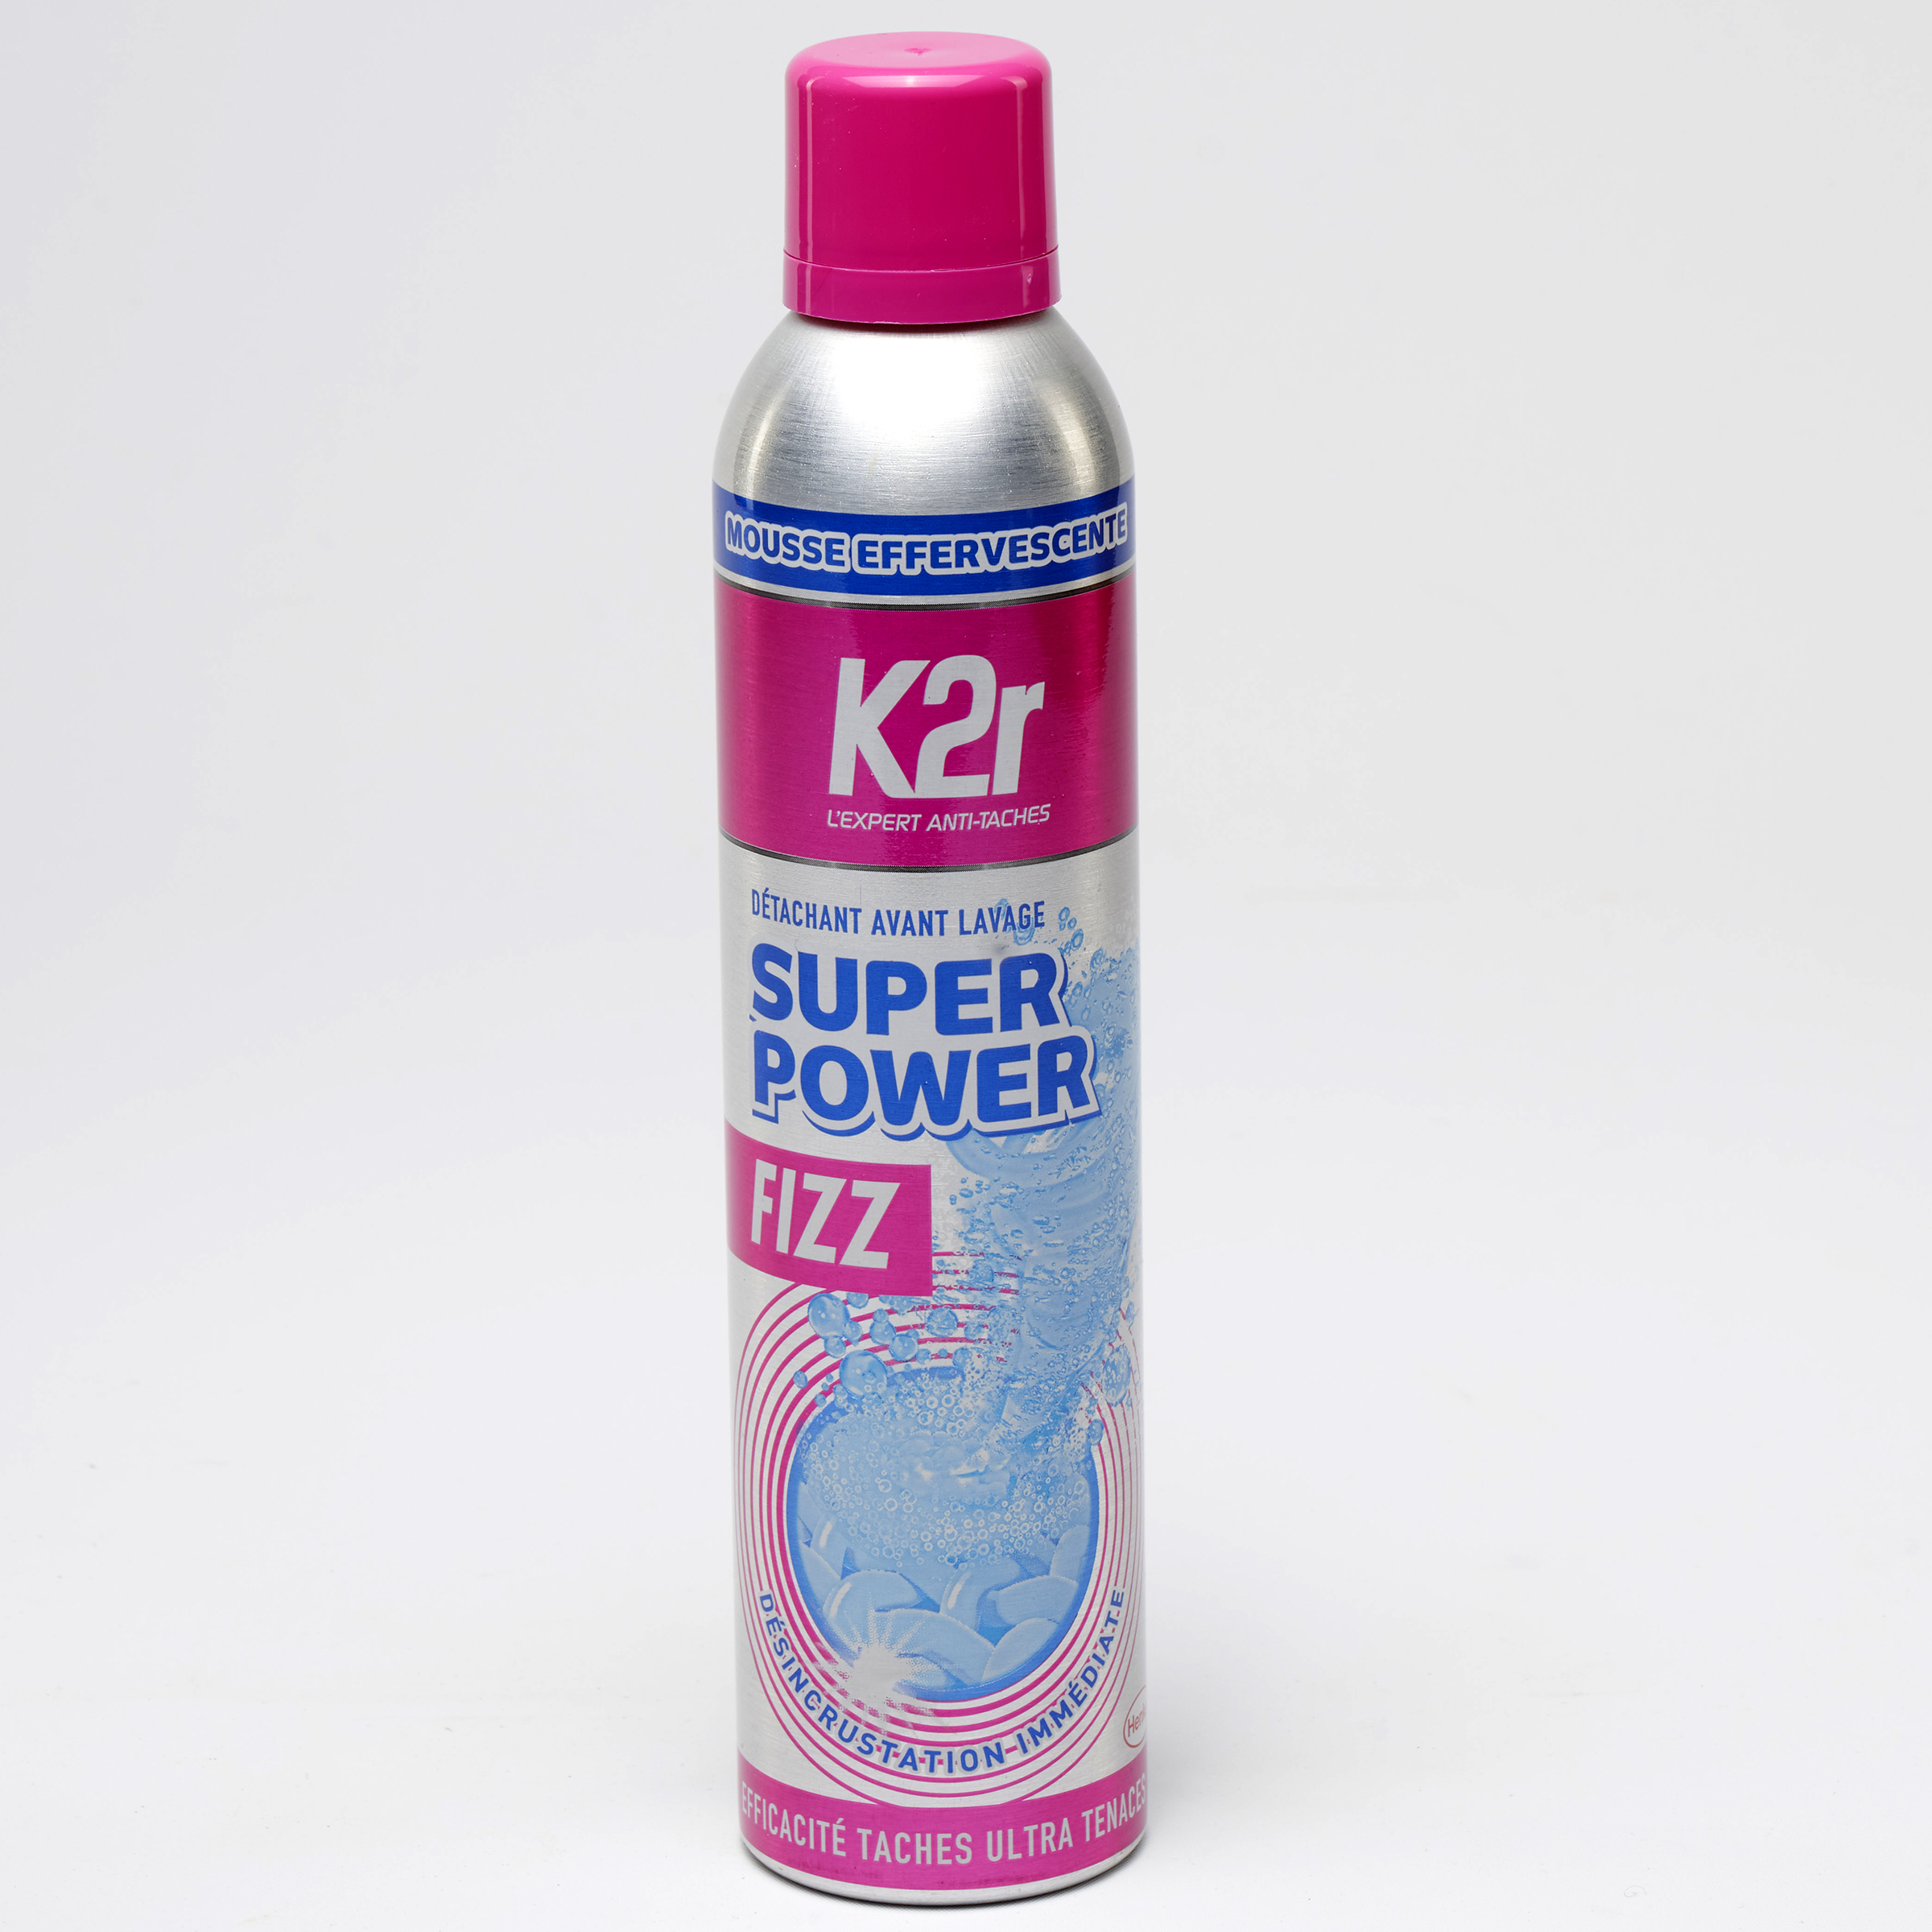 K2r Détachant avant lavage super power+50% d'agent actifs (Henkel